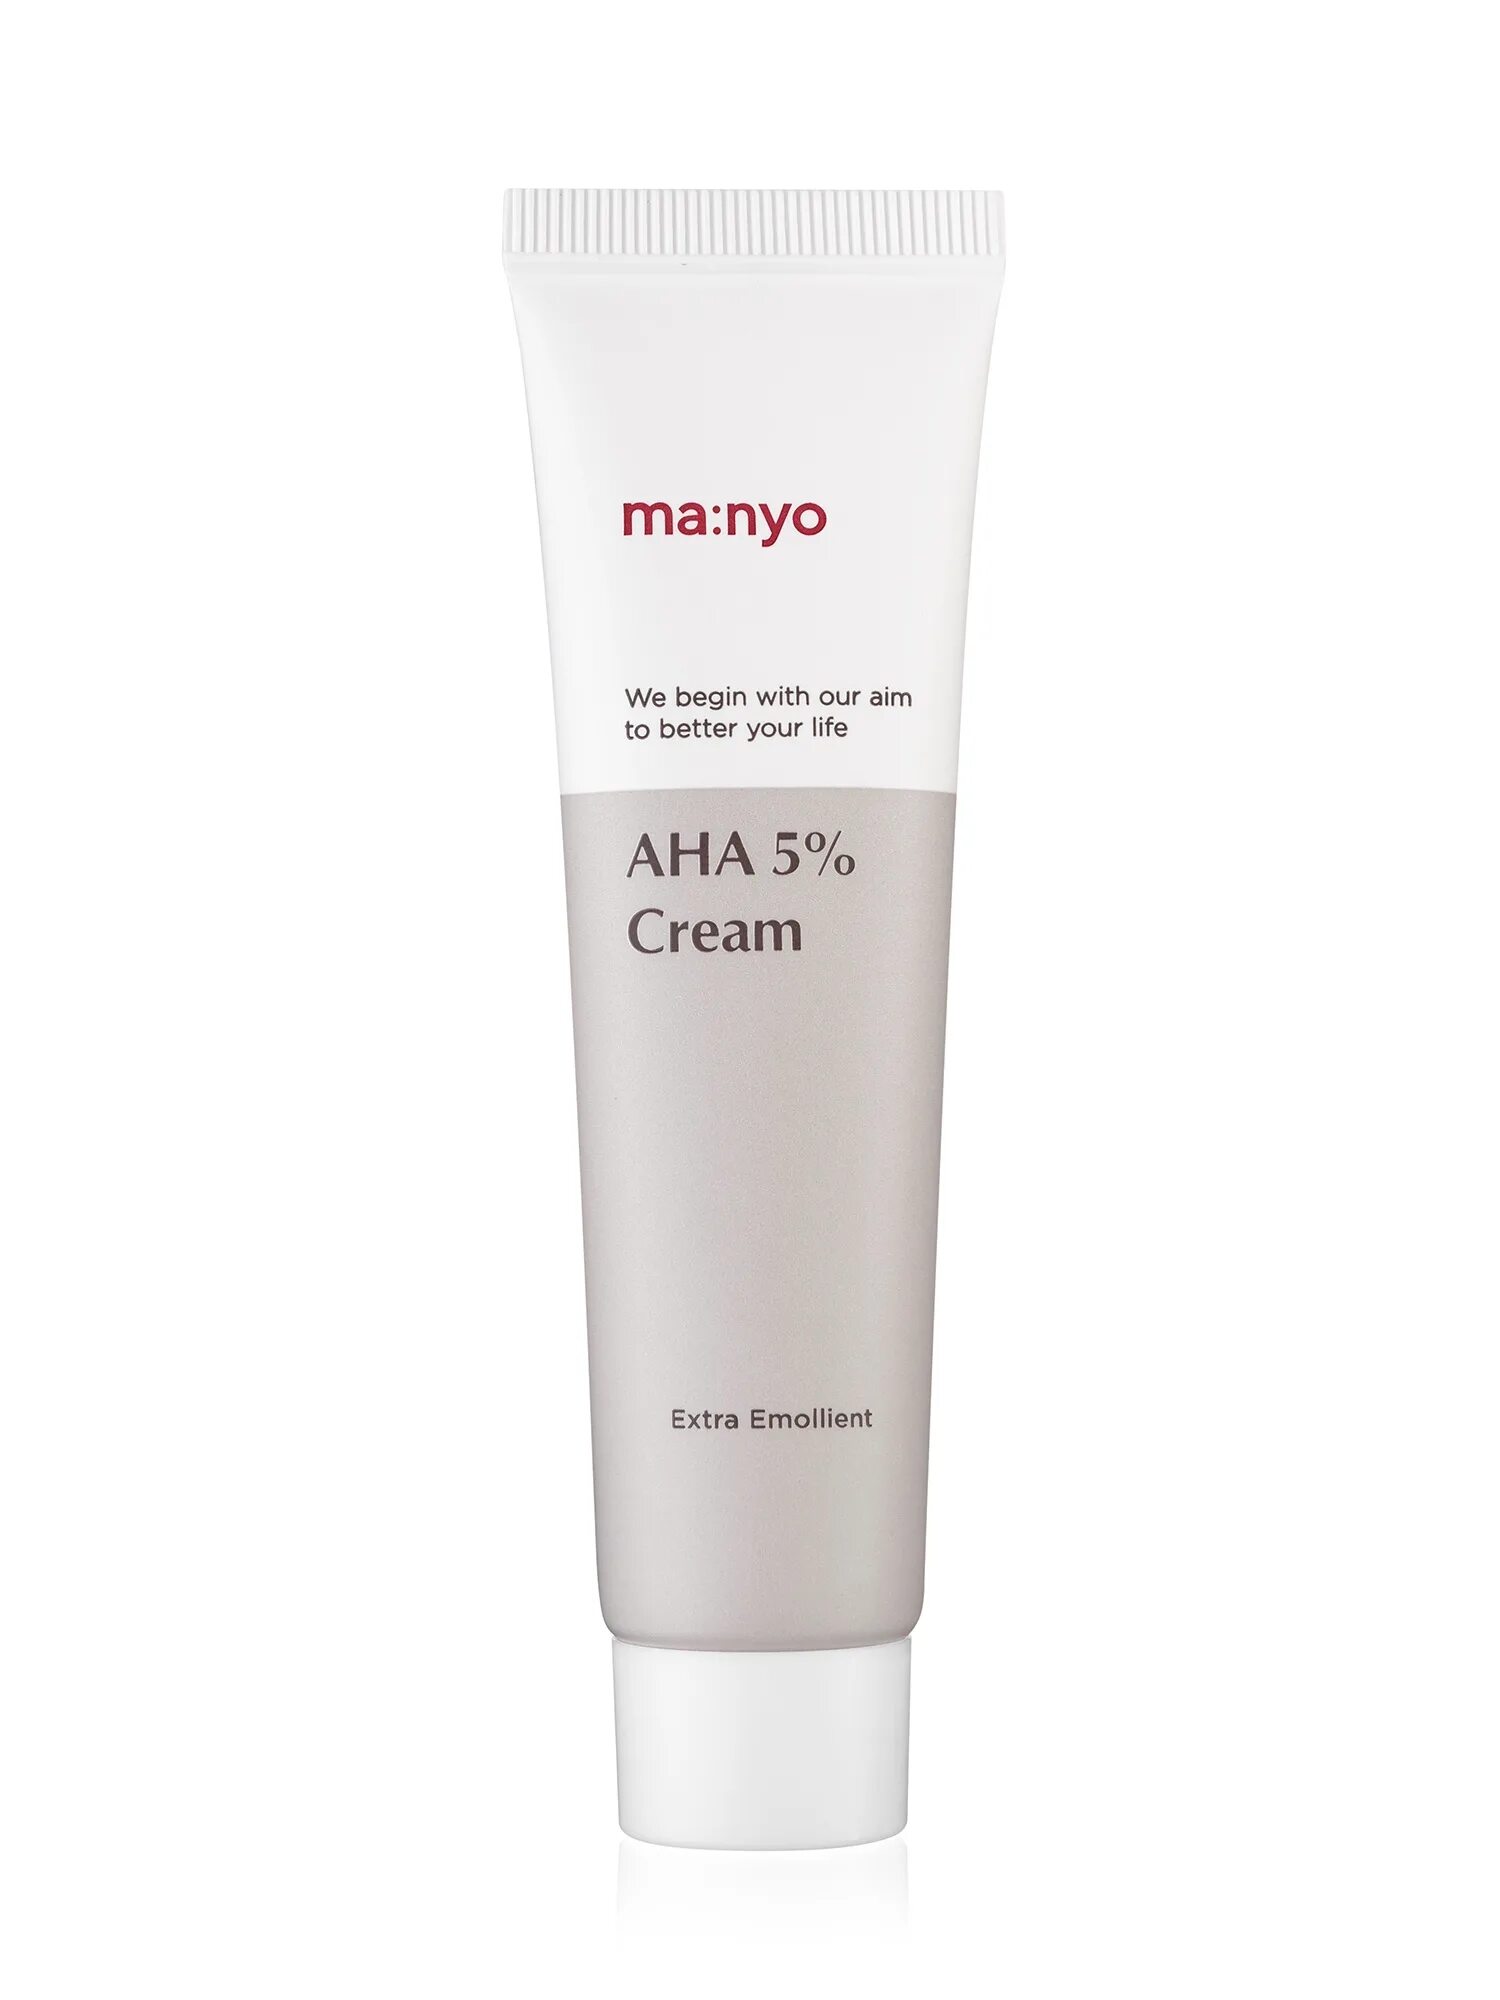 Ma:nyo Aha 5 Cream. Ma nyo крем. Manyo крем для лица. Manyo Factory крем с ана кислотами Blemish Lab Proxyl 5% Aha Cream. Manyo peeling gel